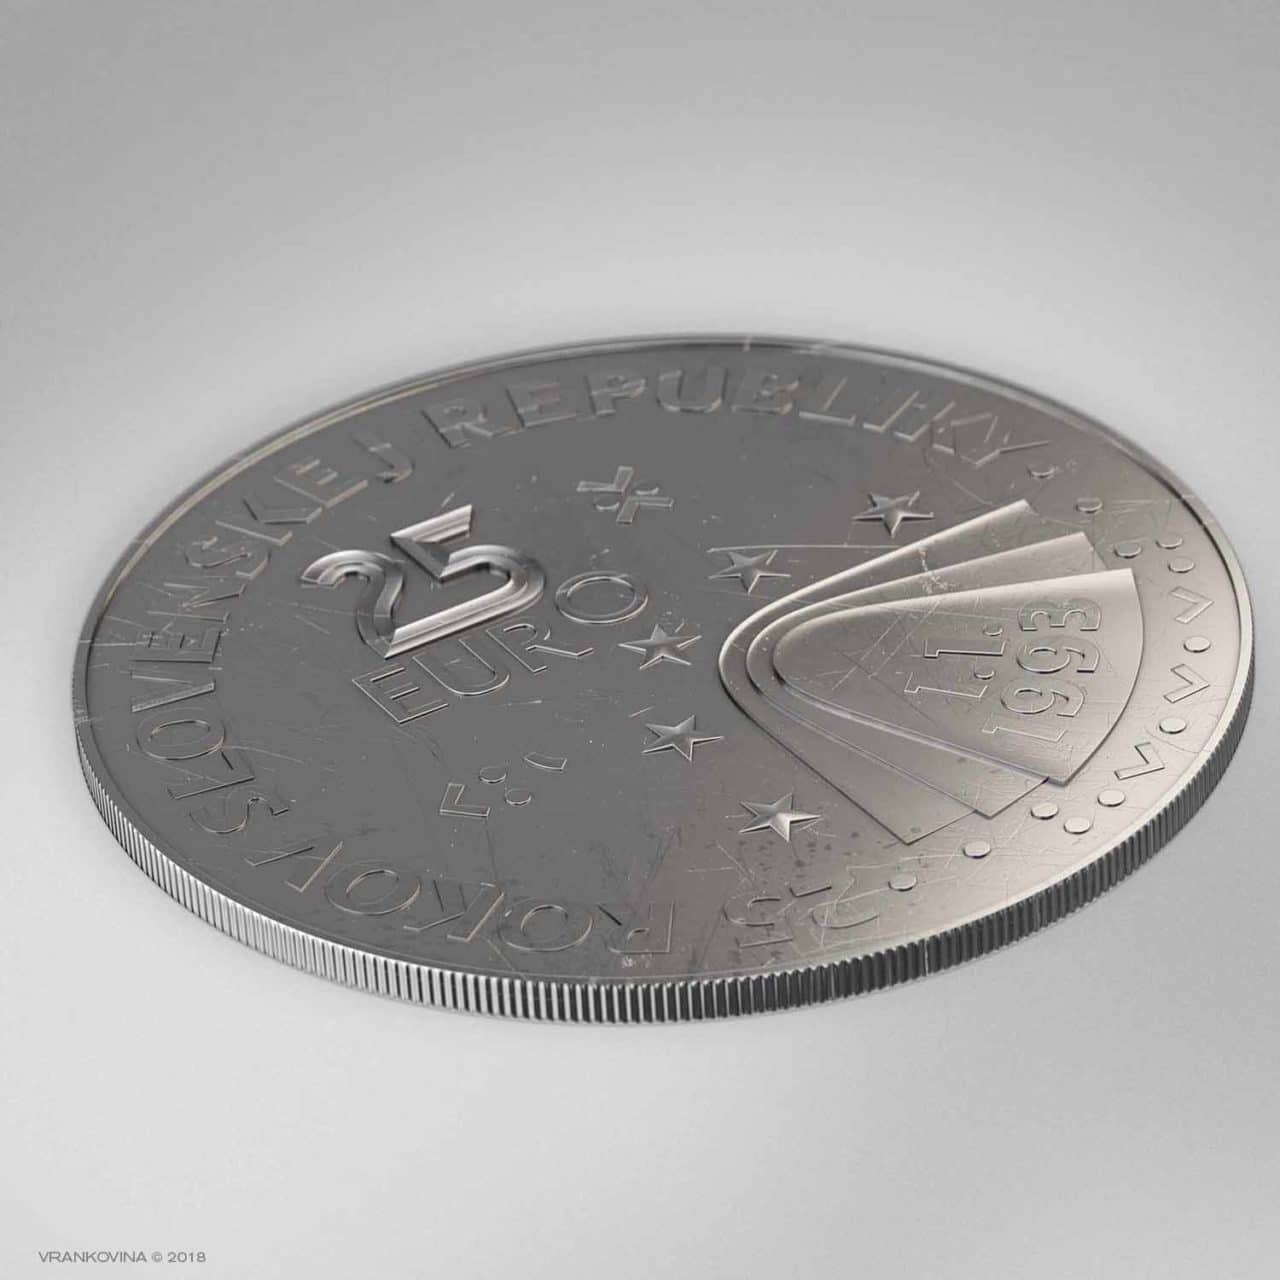 Münze zum 25. Jahrestag der Gründung der Slowakischen Republik, Revers